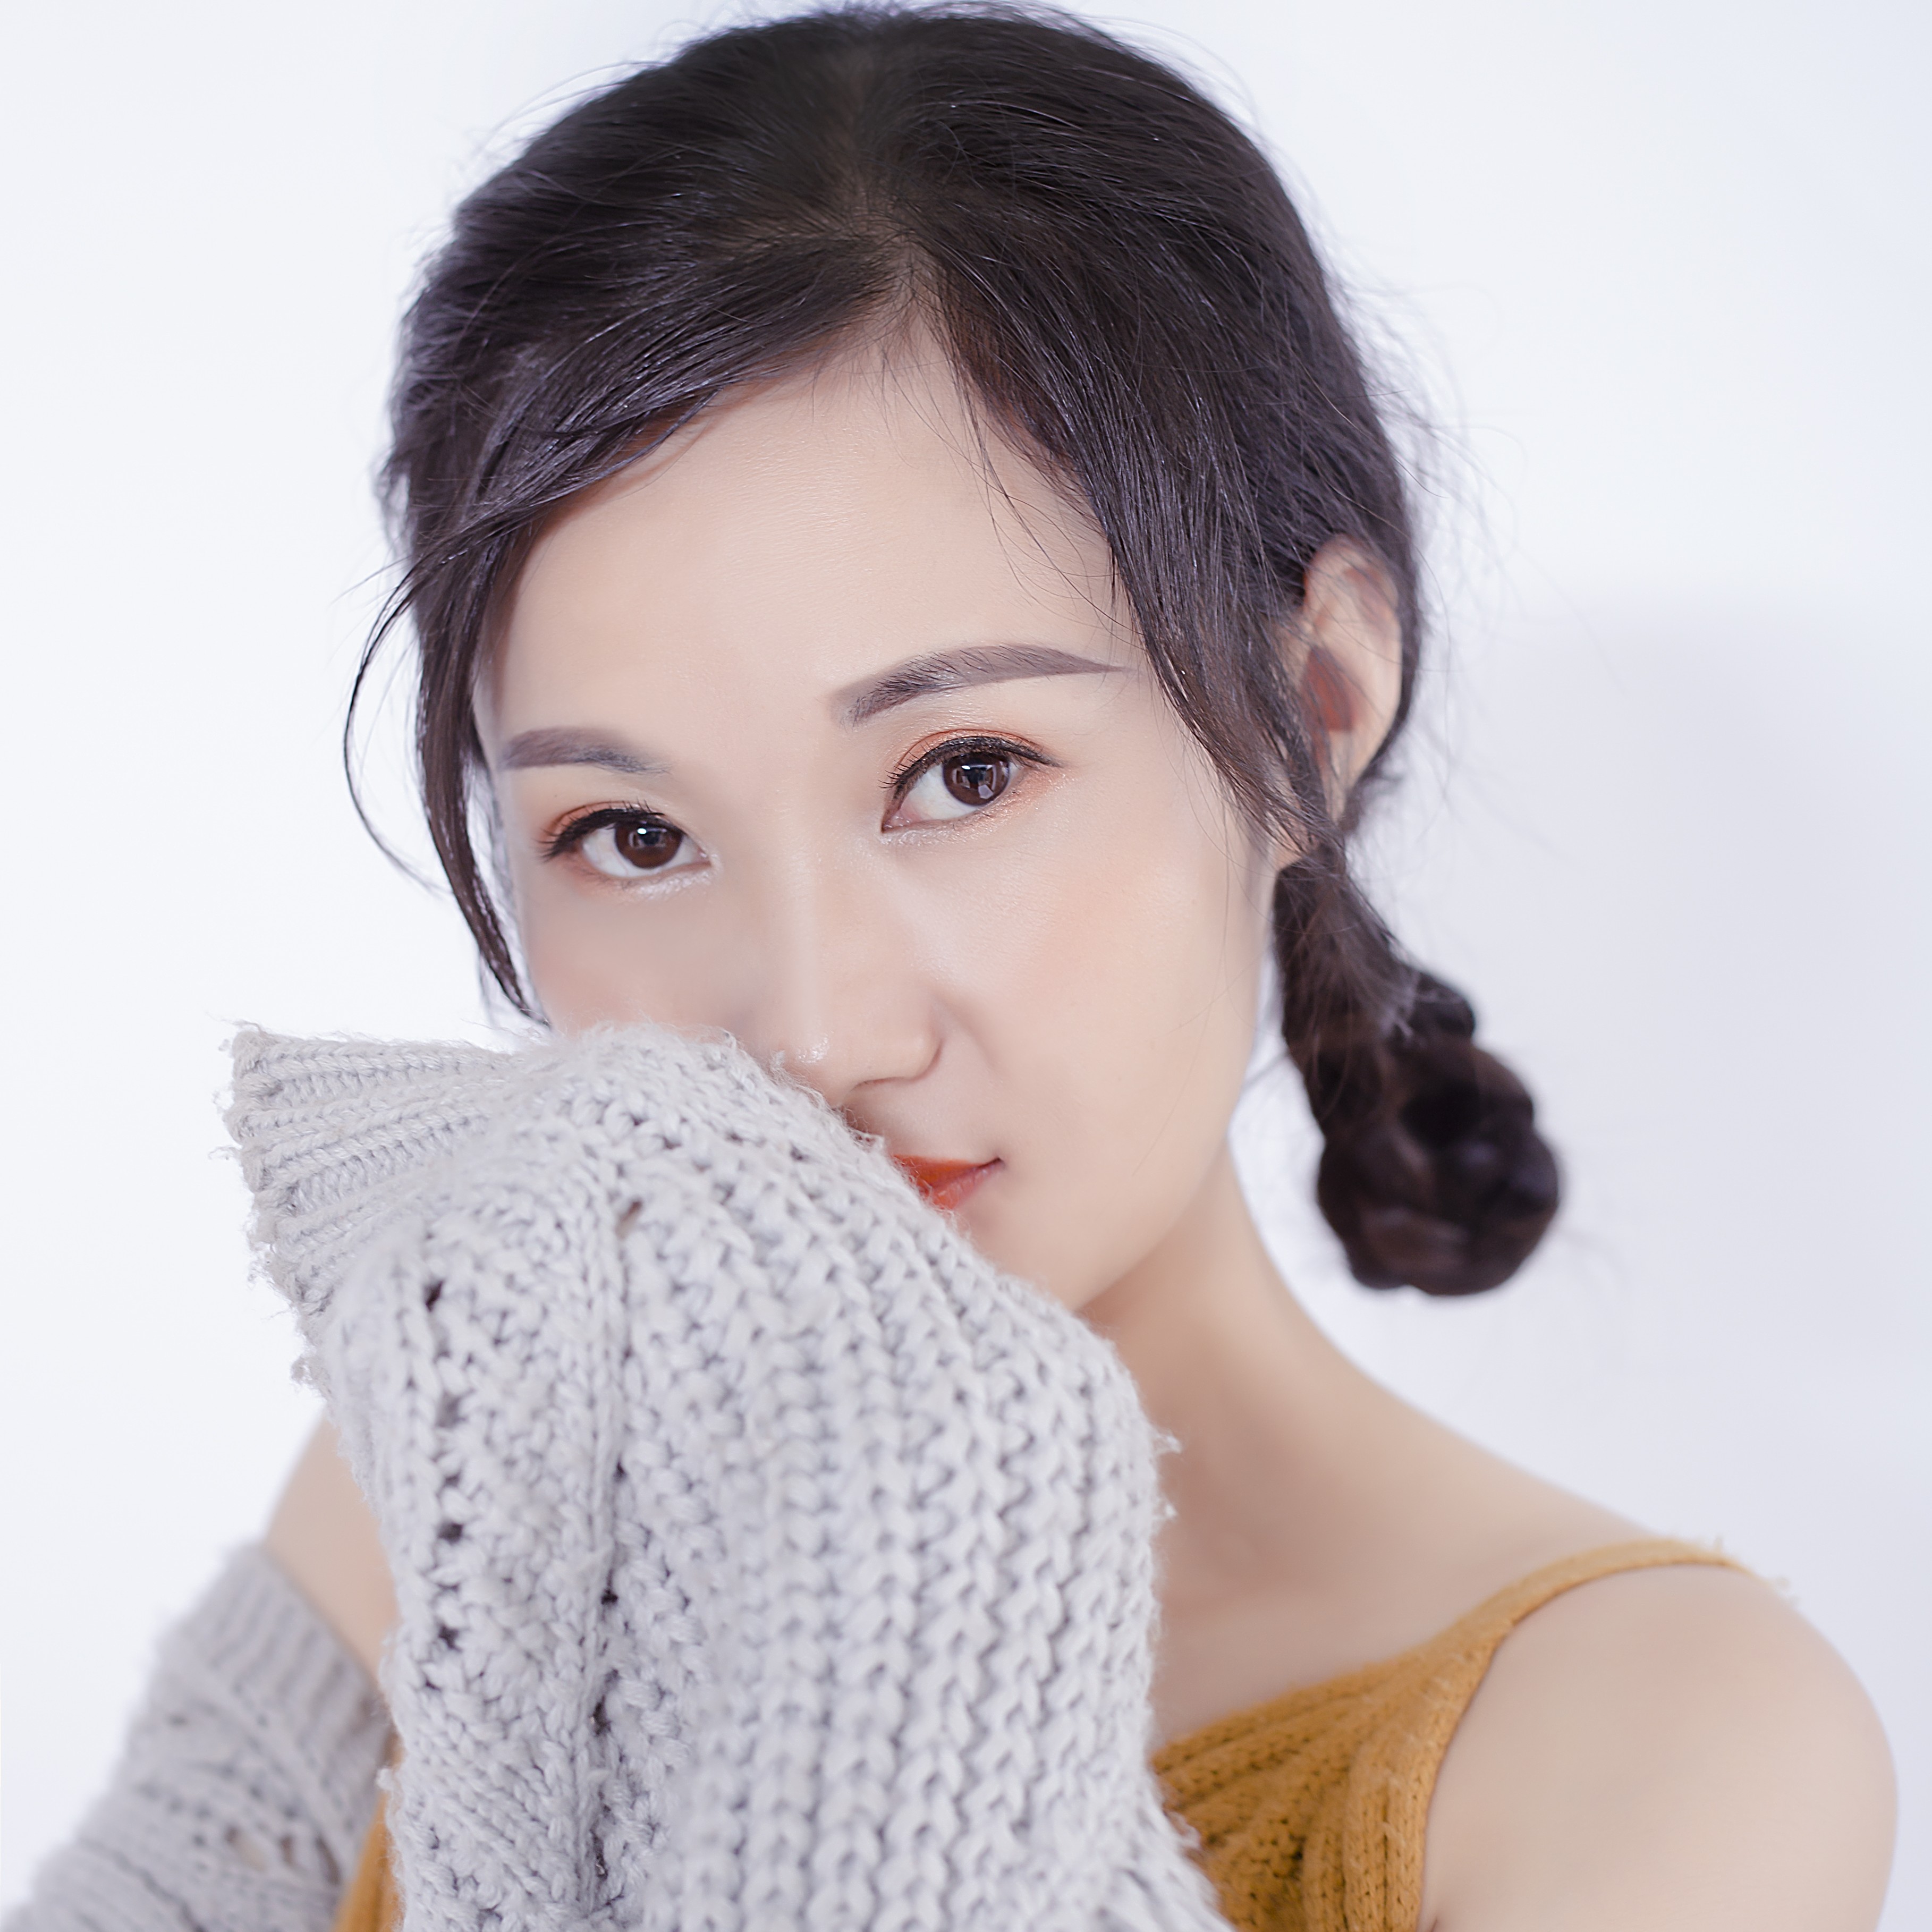 陈文静,大陆女歌手,重庆人,喜欢唱歌,网络主播,代表作:《虐心的爱》等